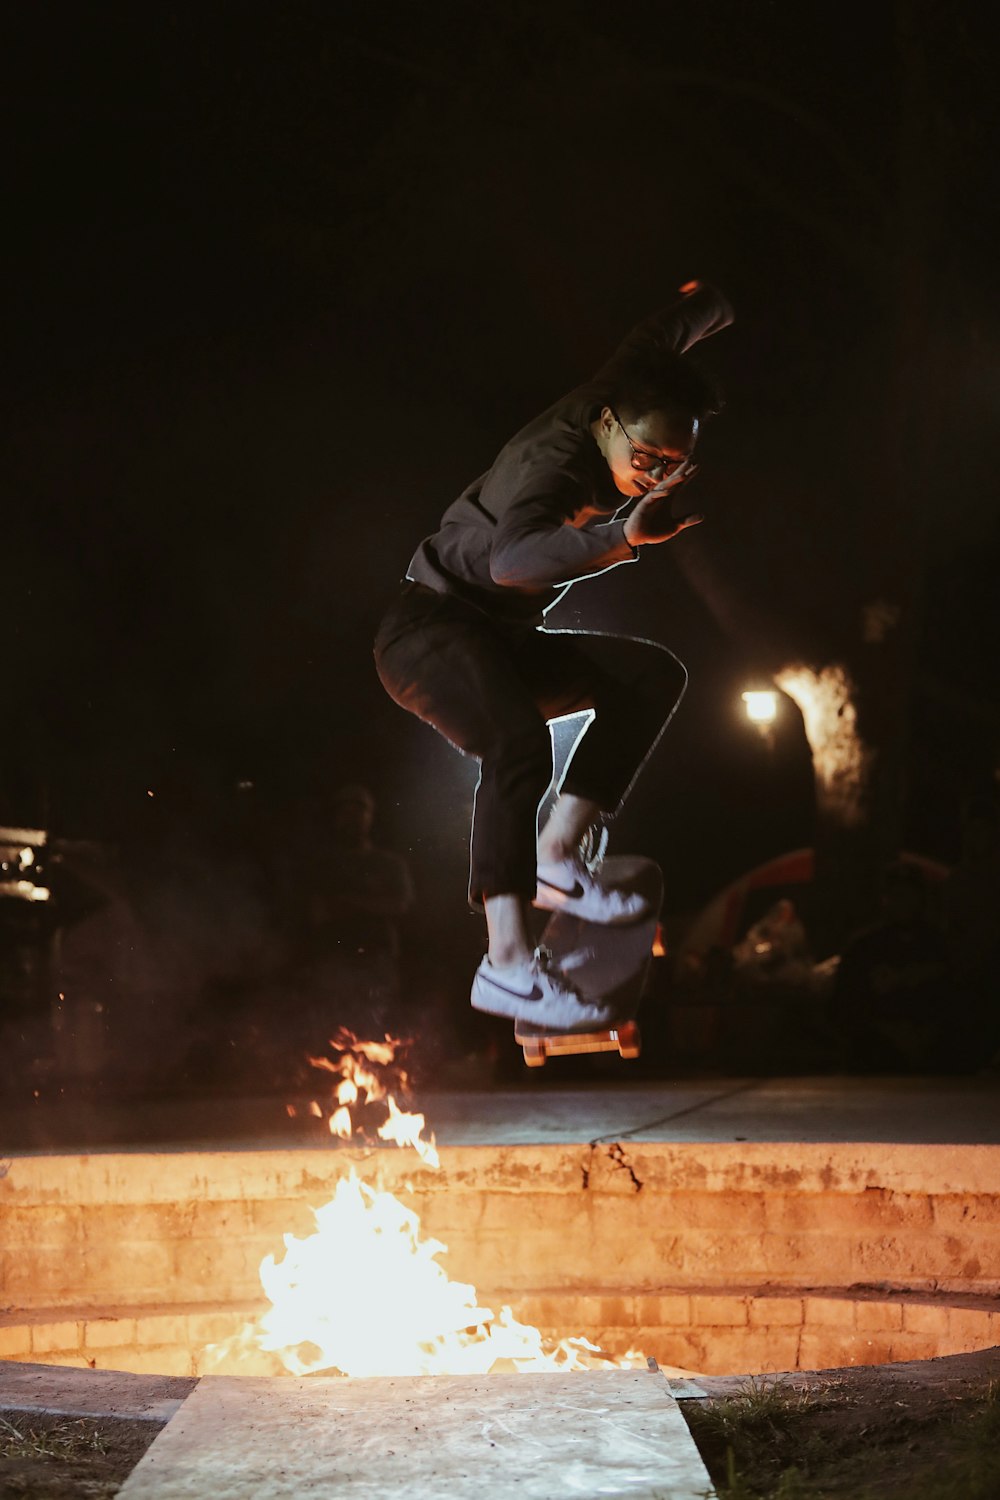 hombre en chaqueta negra patinando cerca del fuego